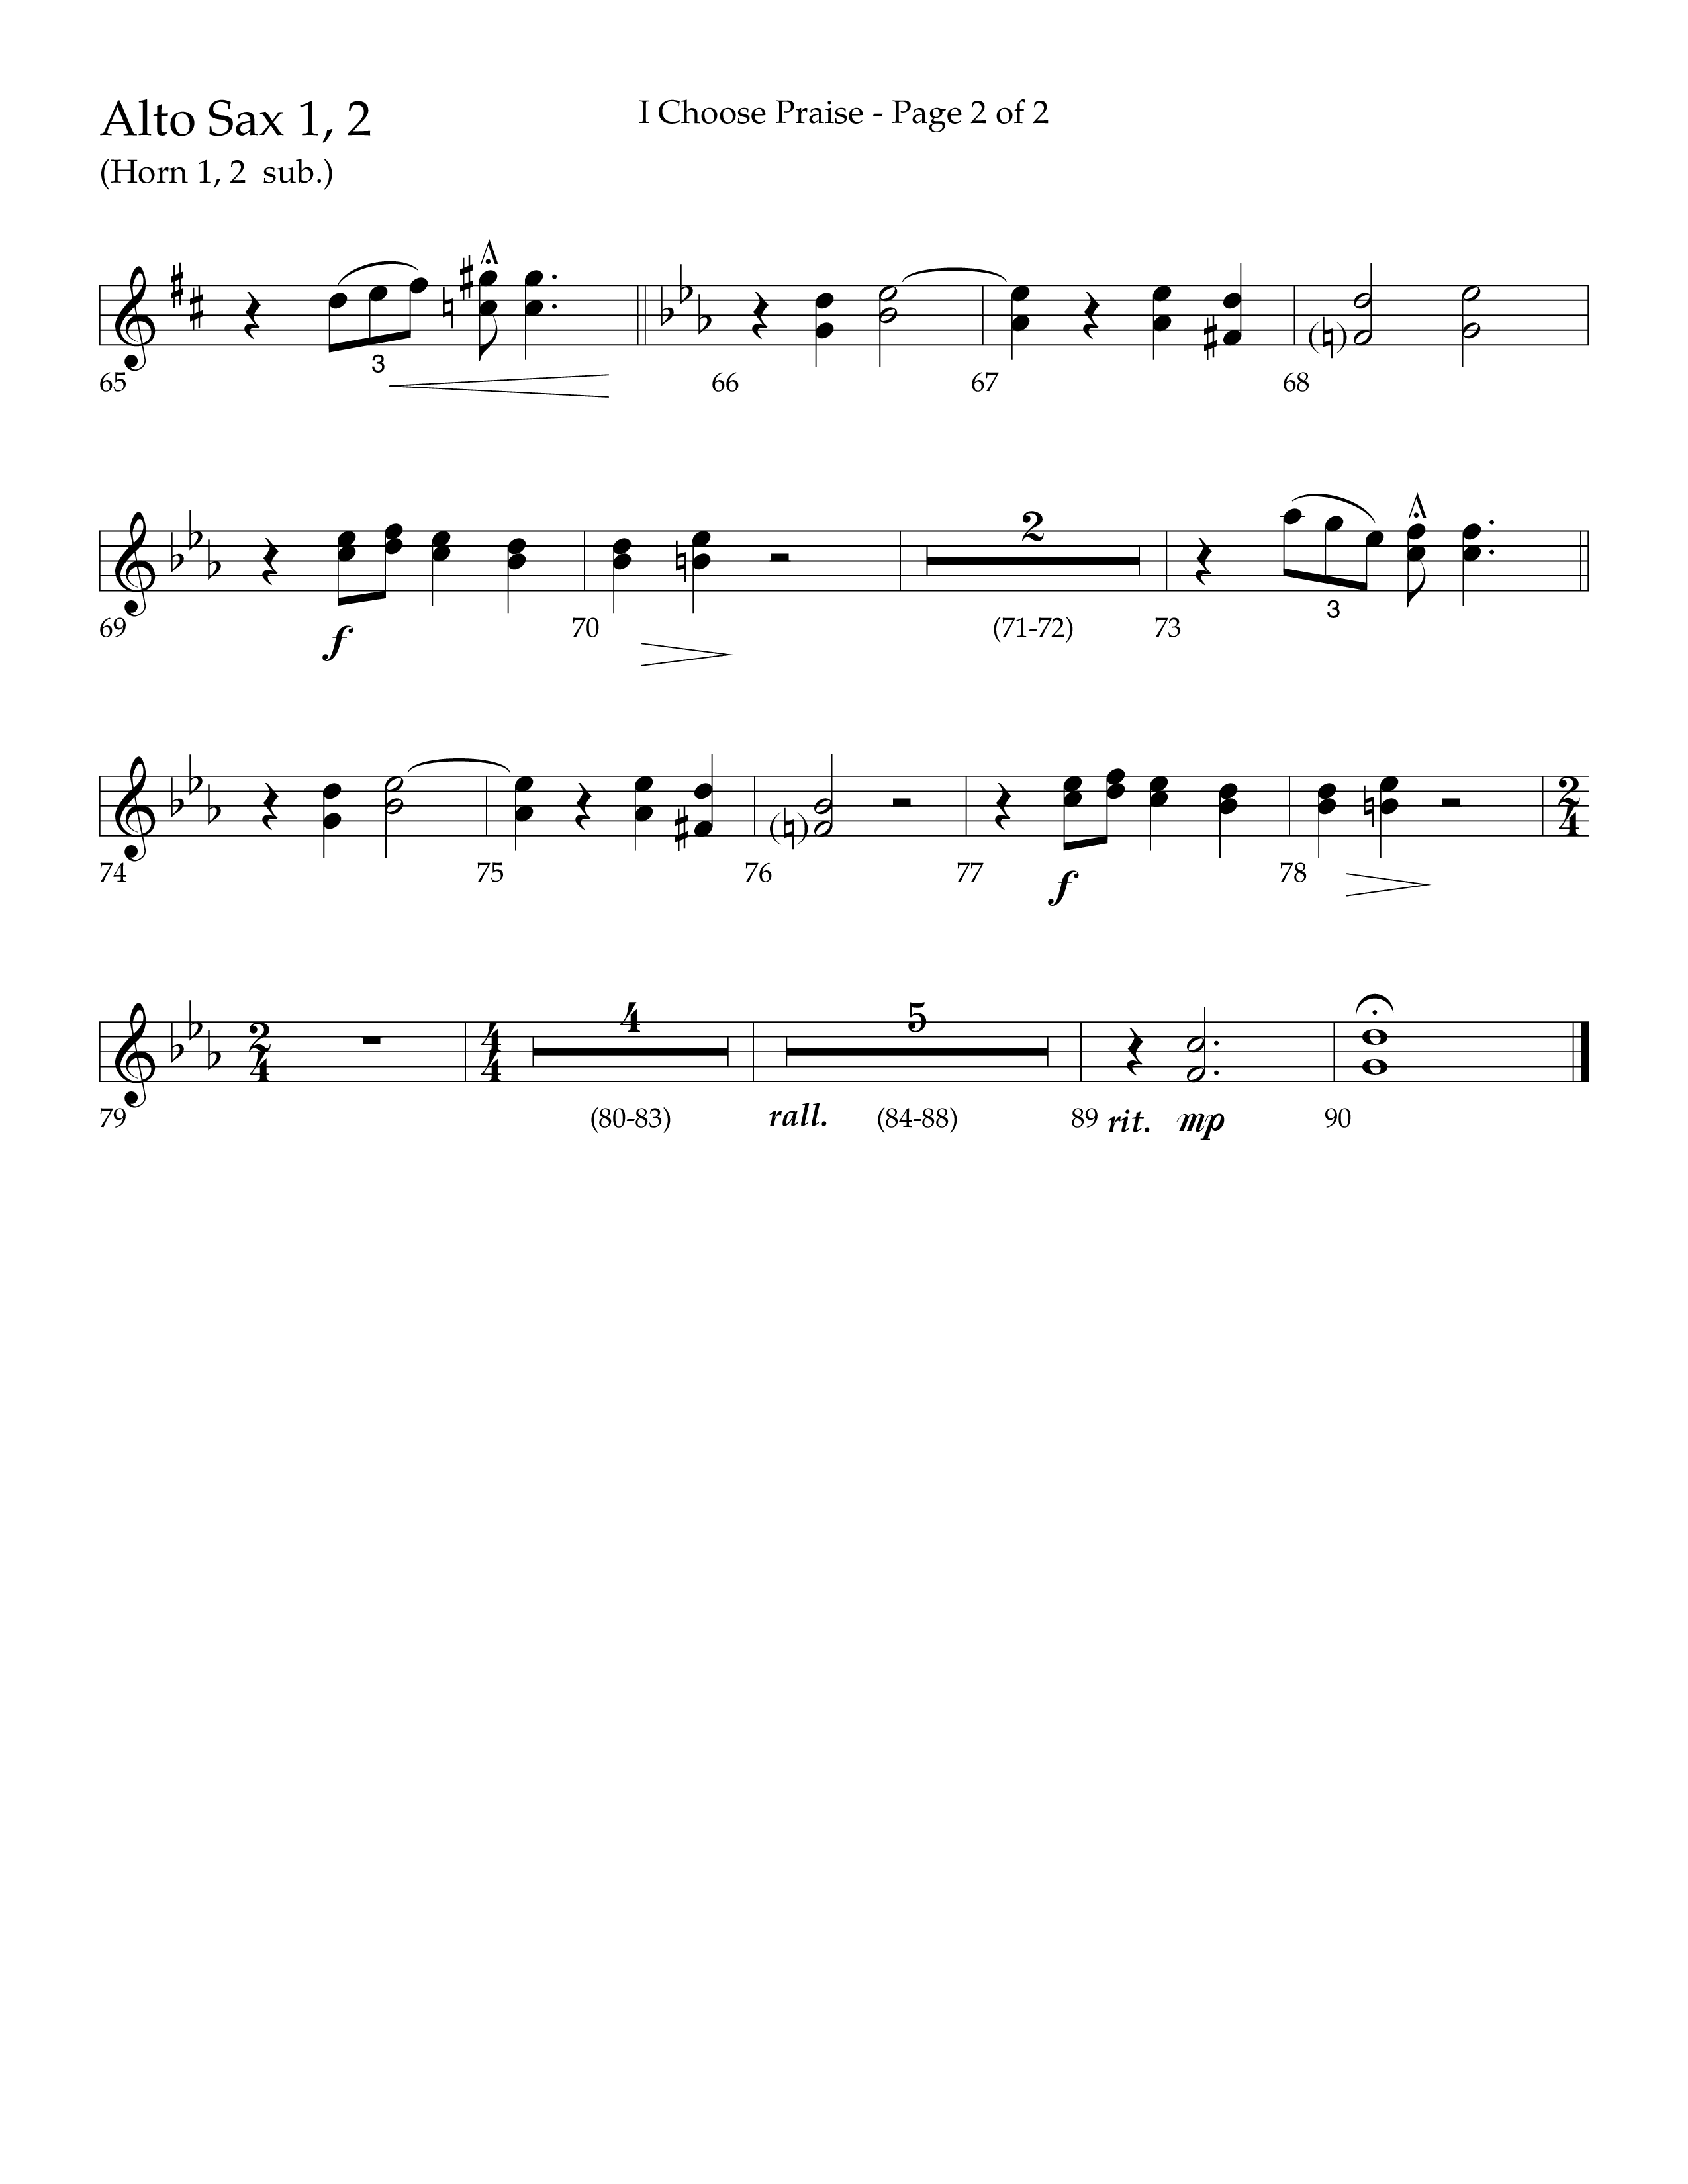 I Choose Praise (Choral Anthem SATB) Alto Sax 1/2 (Lifeway Choral / Arr. Jim Hammerly)